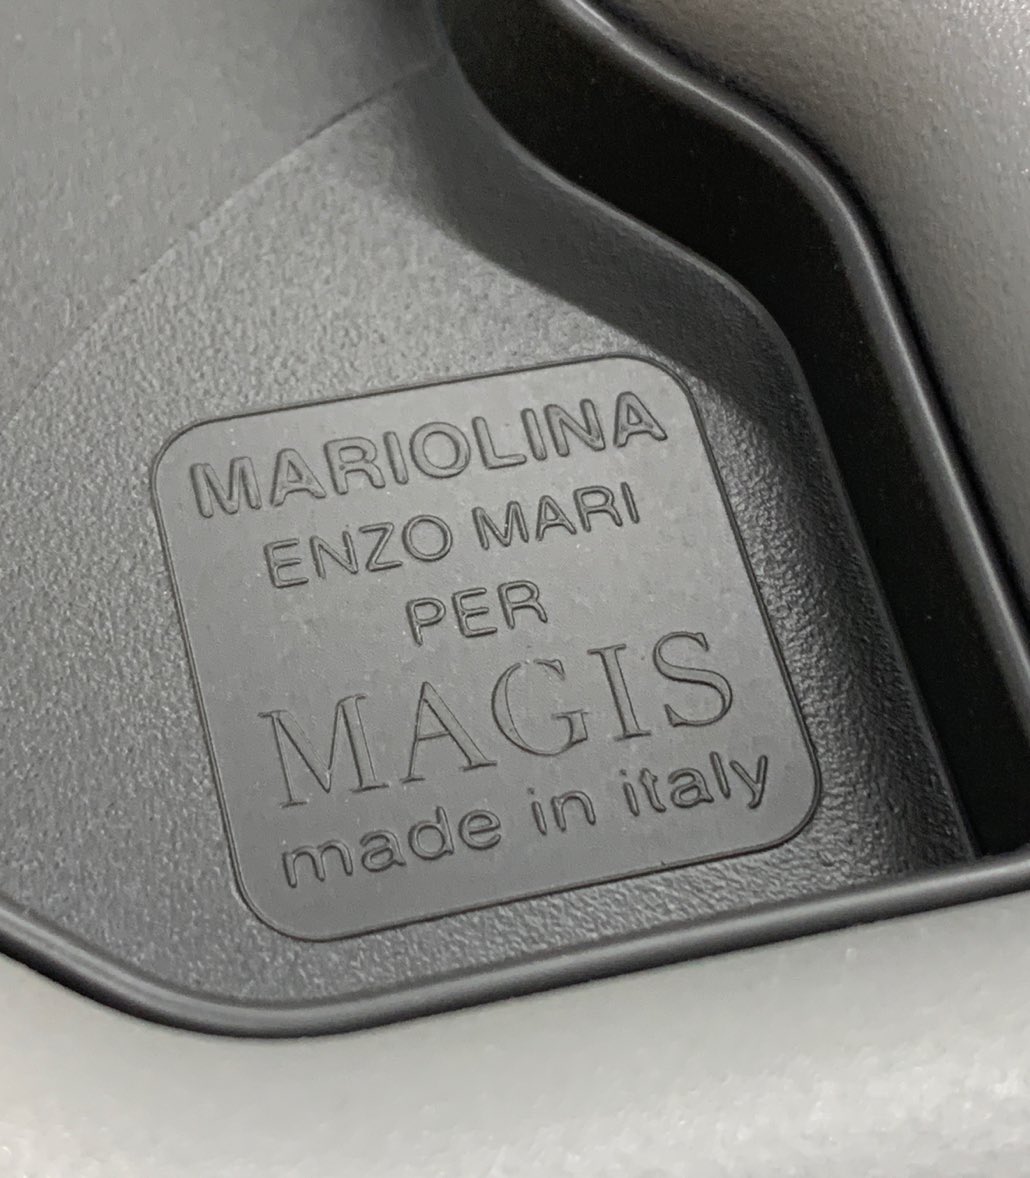 よく知られた話だと思うけど、無印良品のスチールチェアはMAGISのEnzo Mariデザイン。税込10000円しないなんて。RIP #EnzoMari